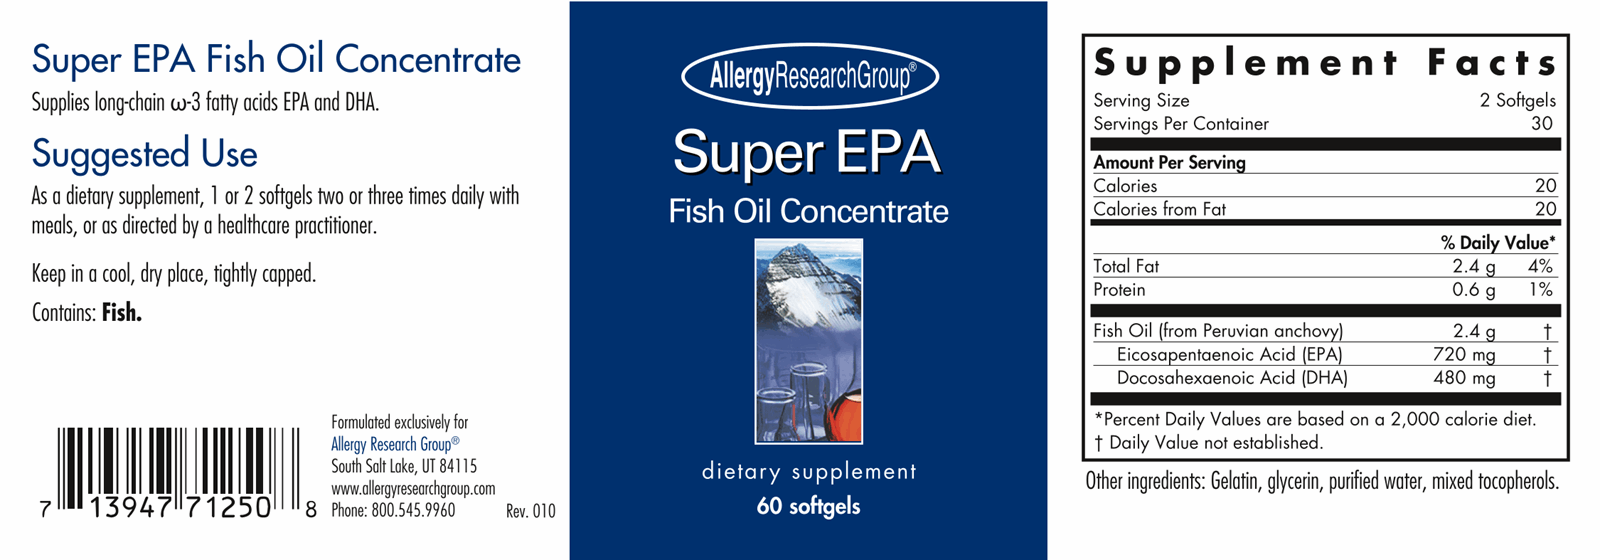 Super EPA Fish Oil Concentrate 